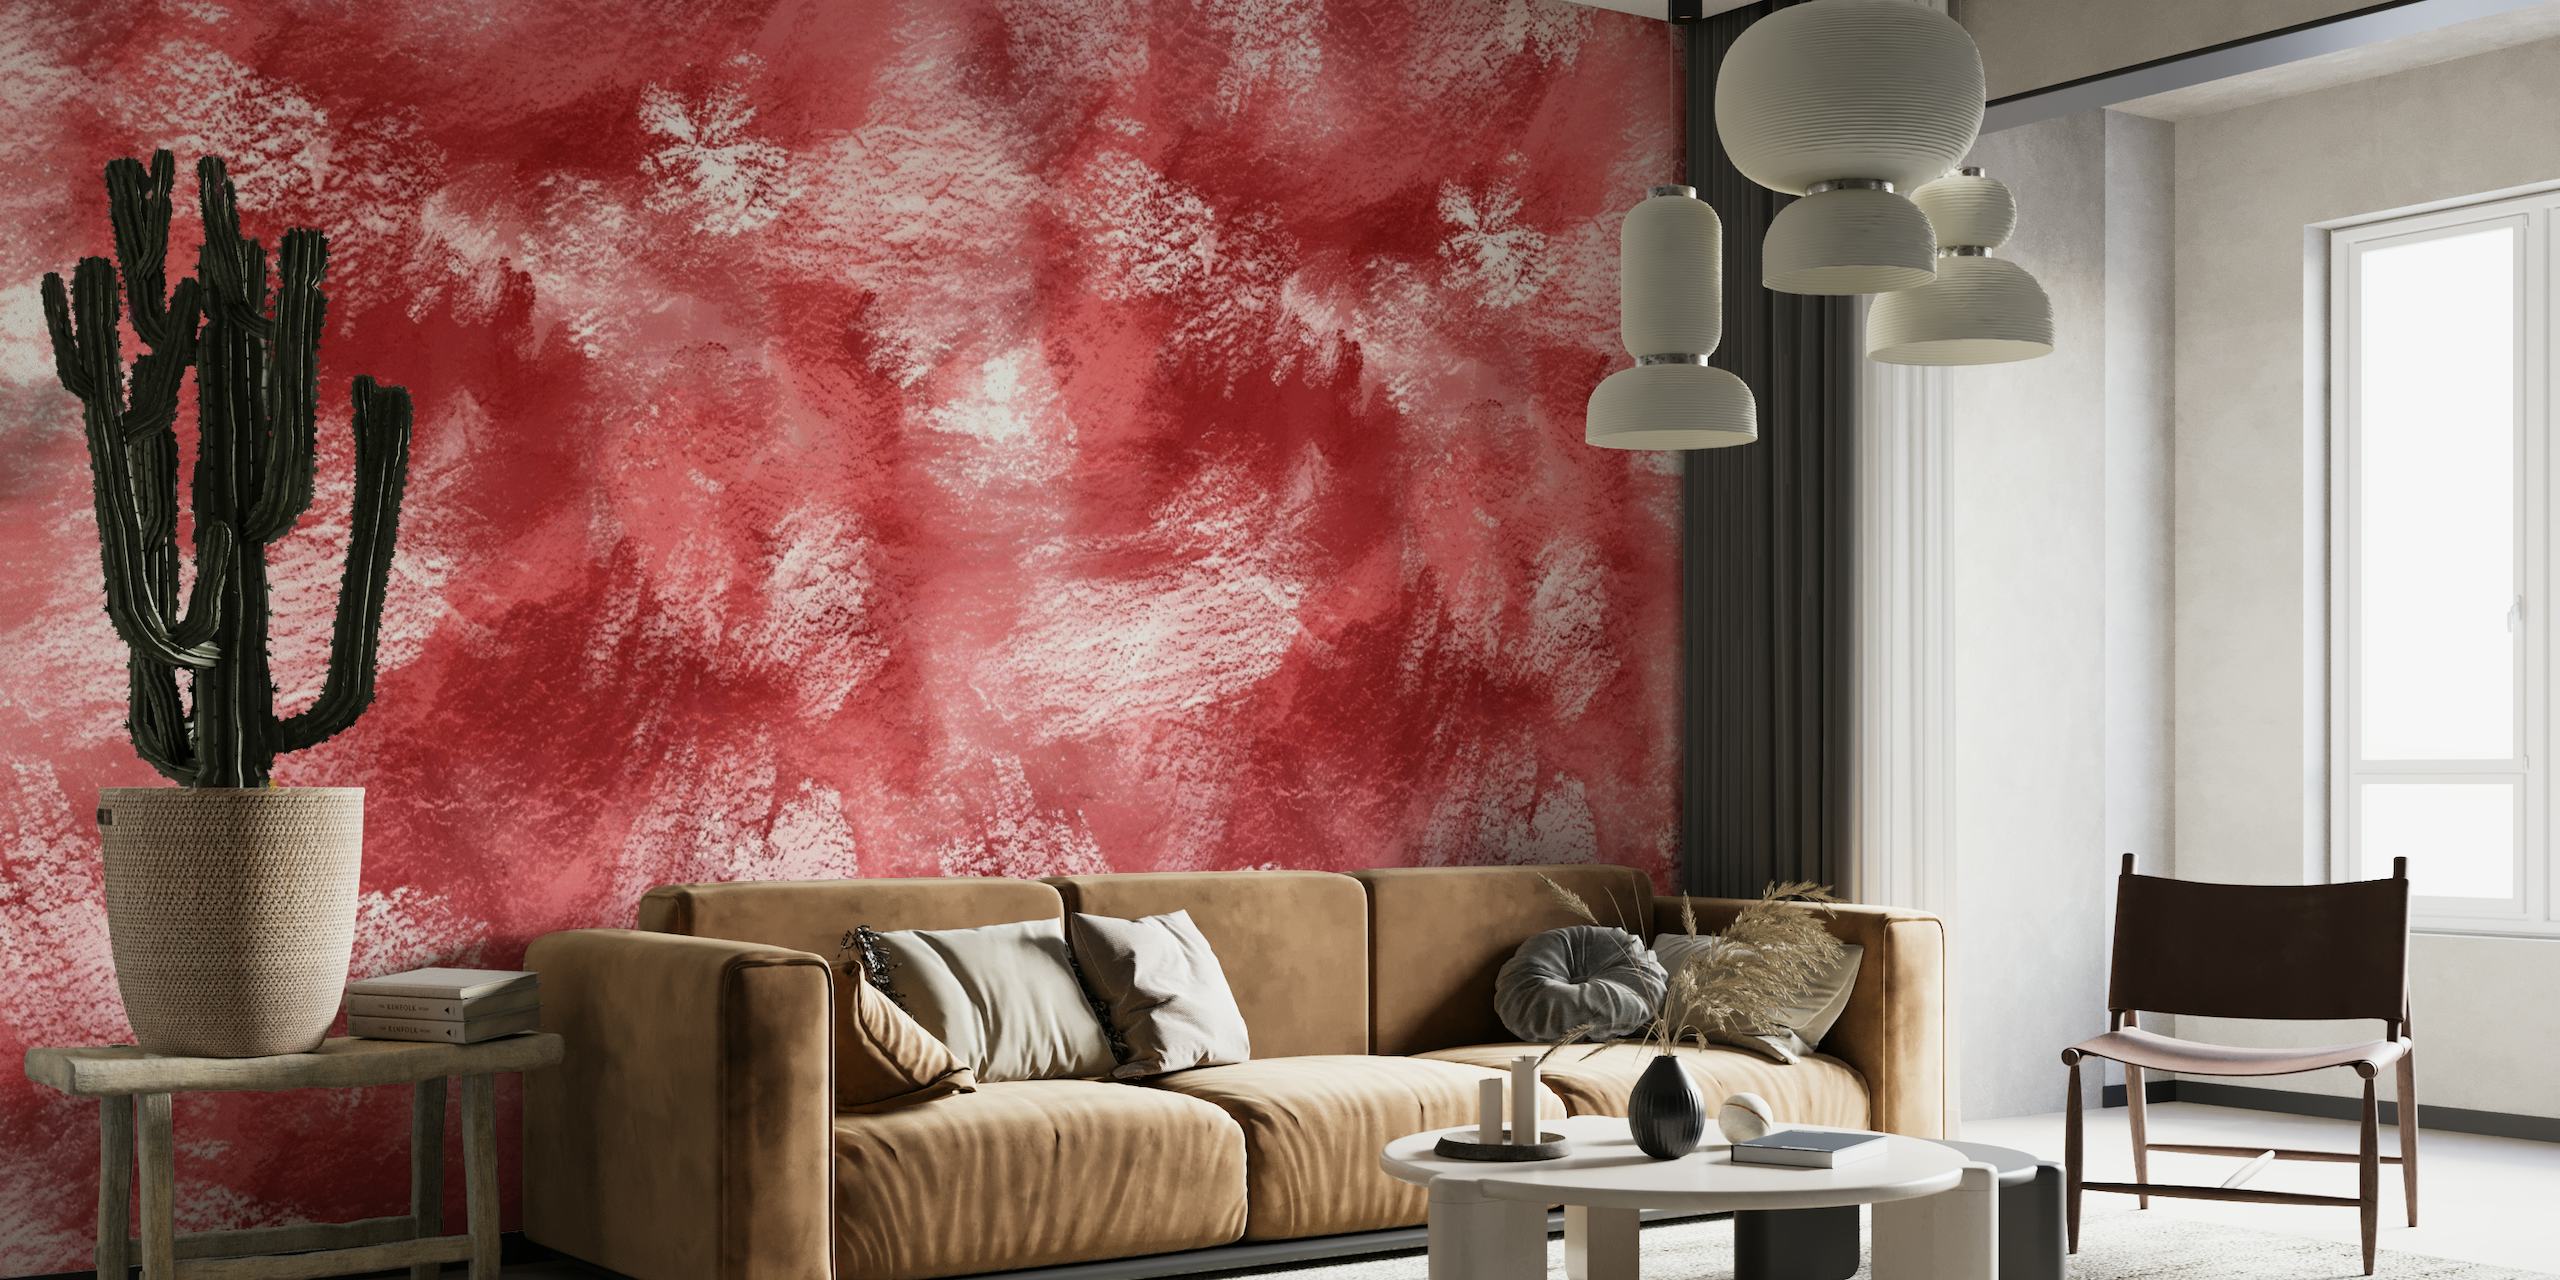 Fotomural pictórico rojo abstracto para decoración del hogar